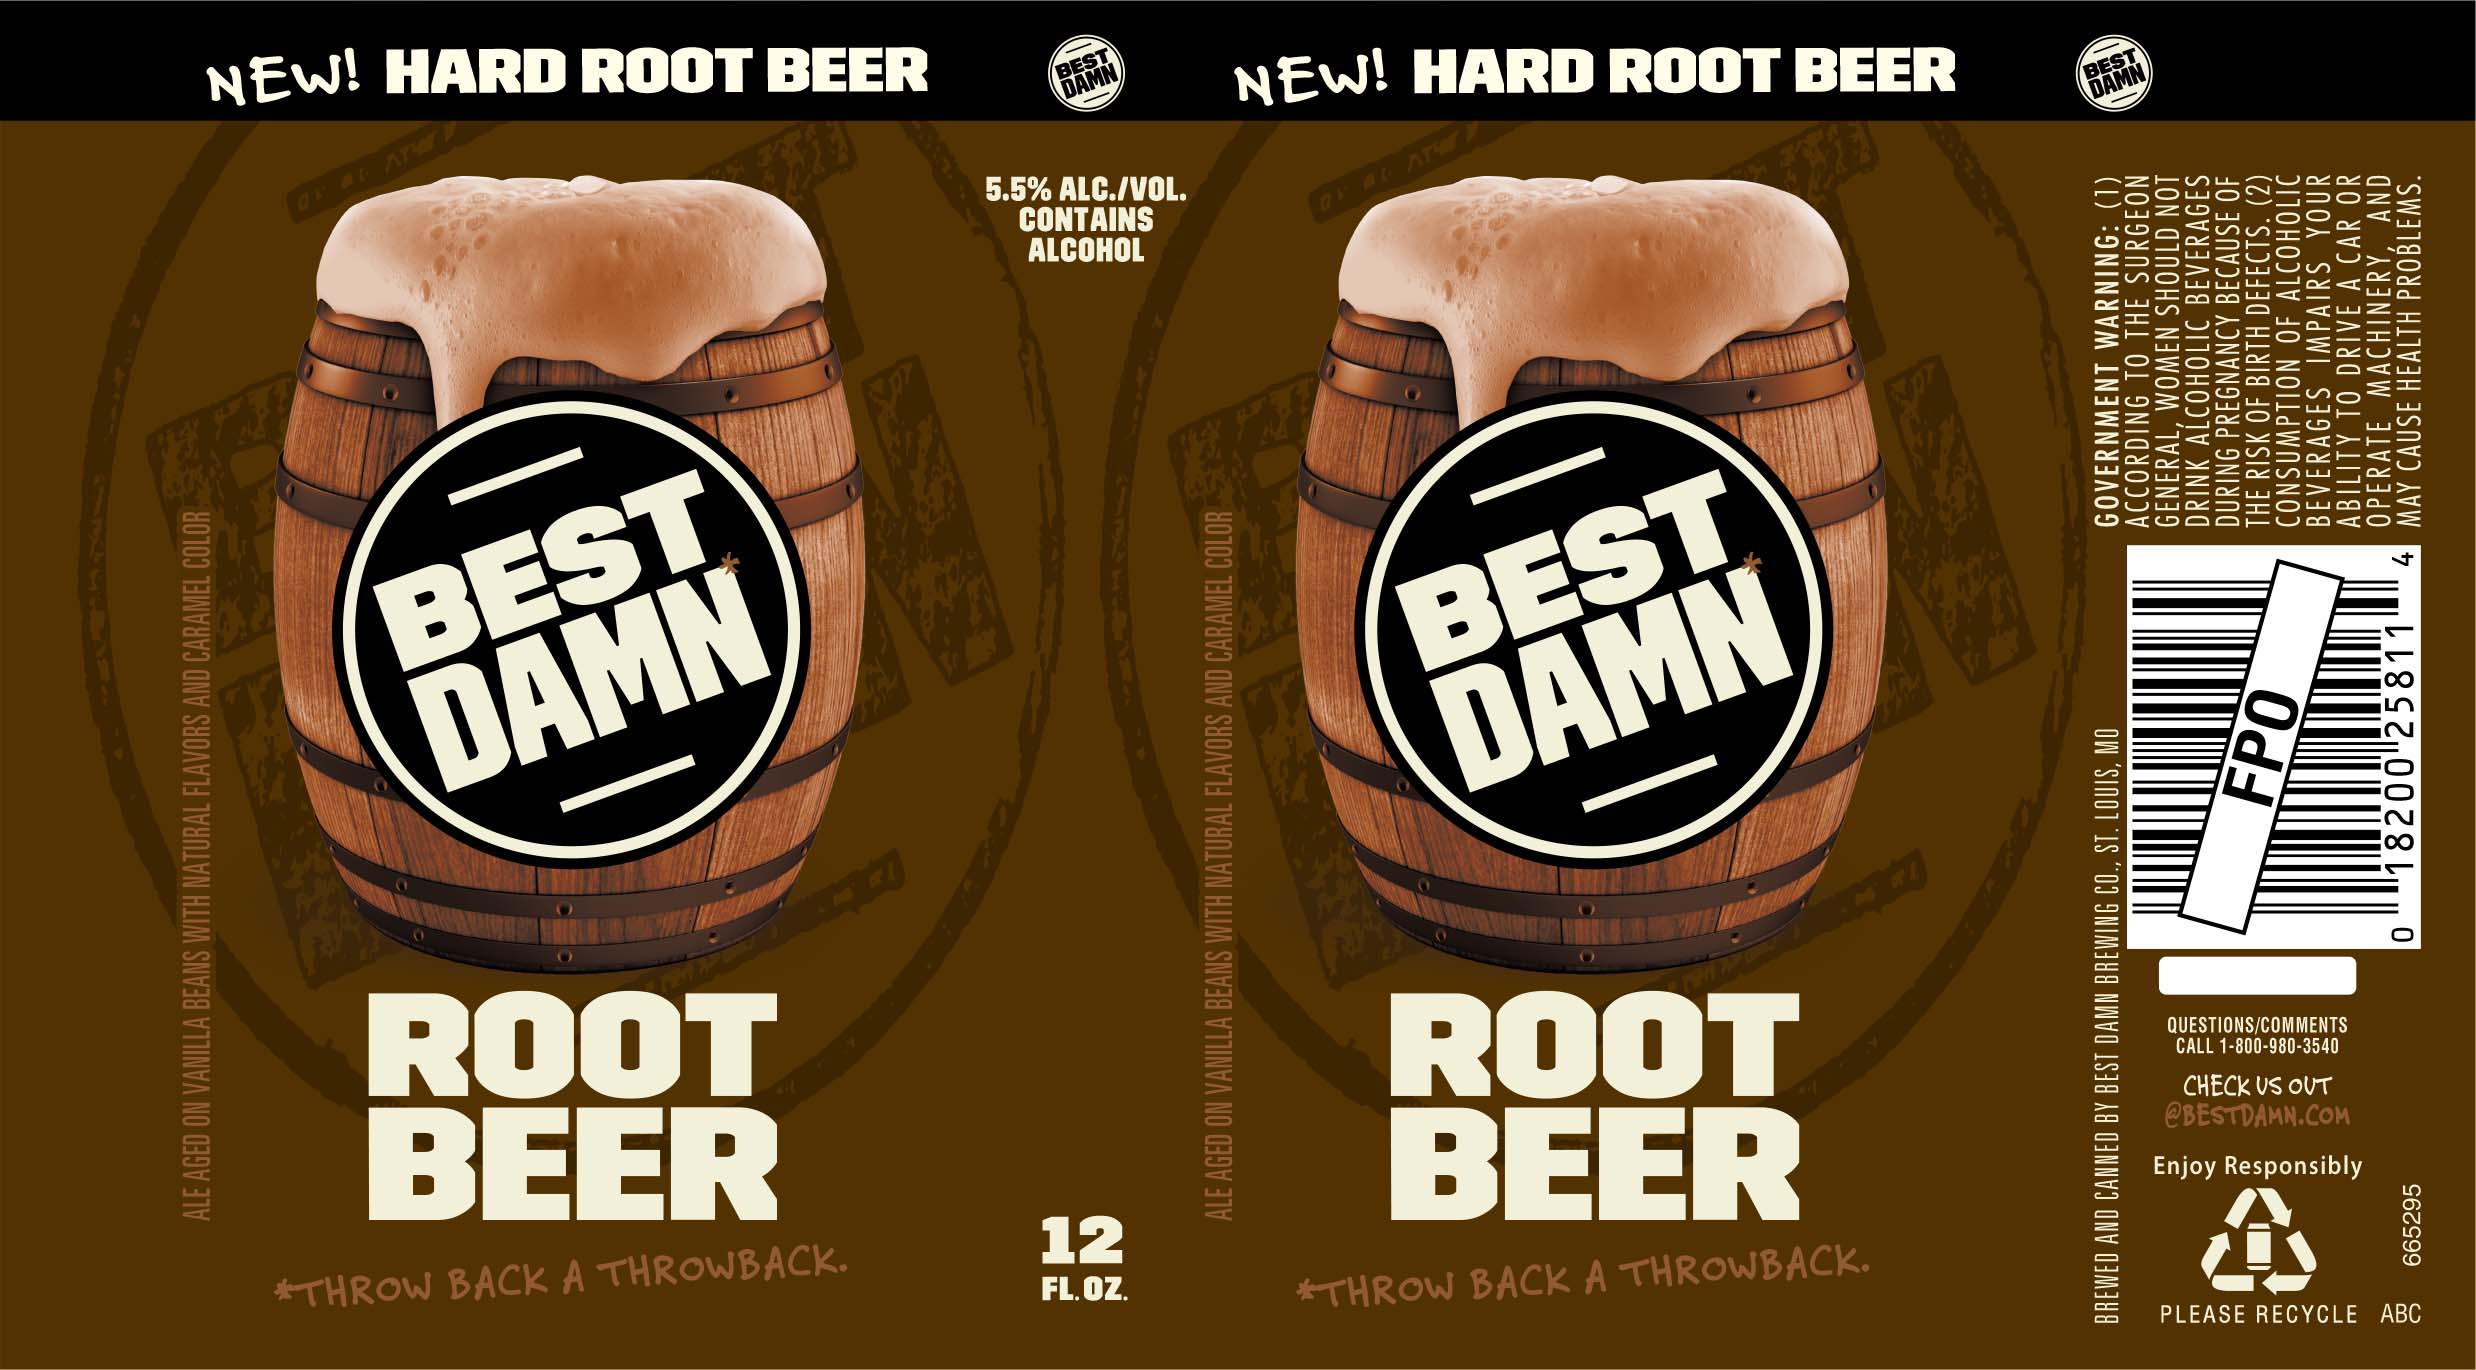 Best Damn Root Beer